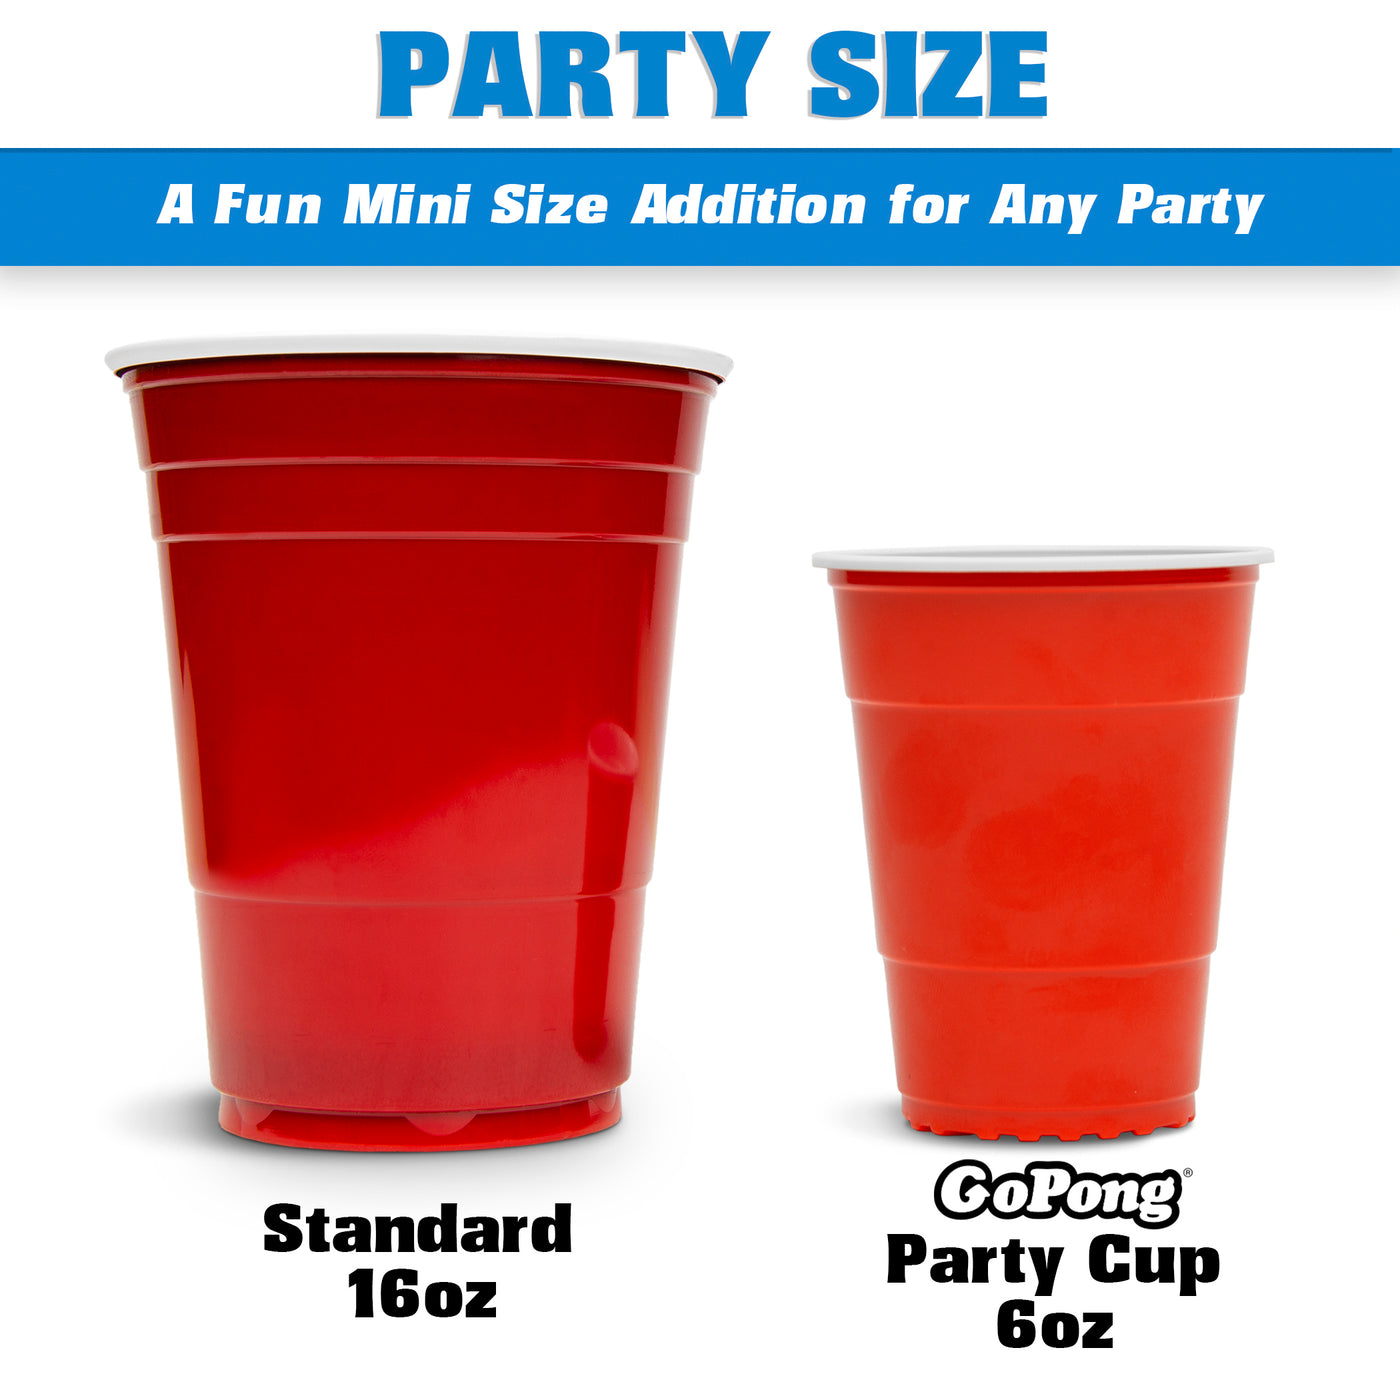 party size comparison